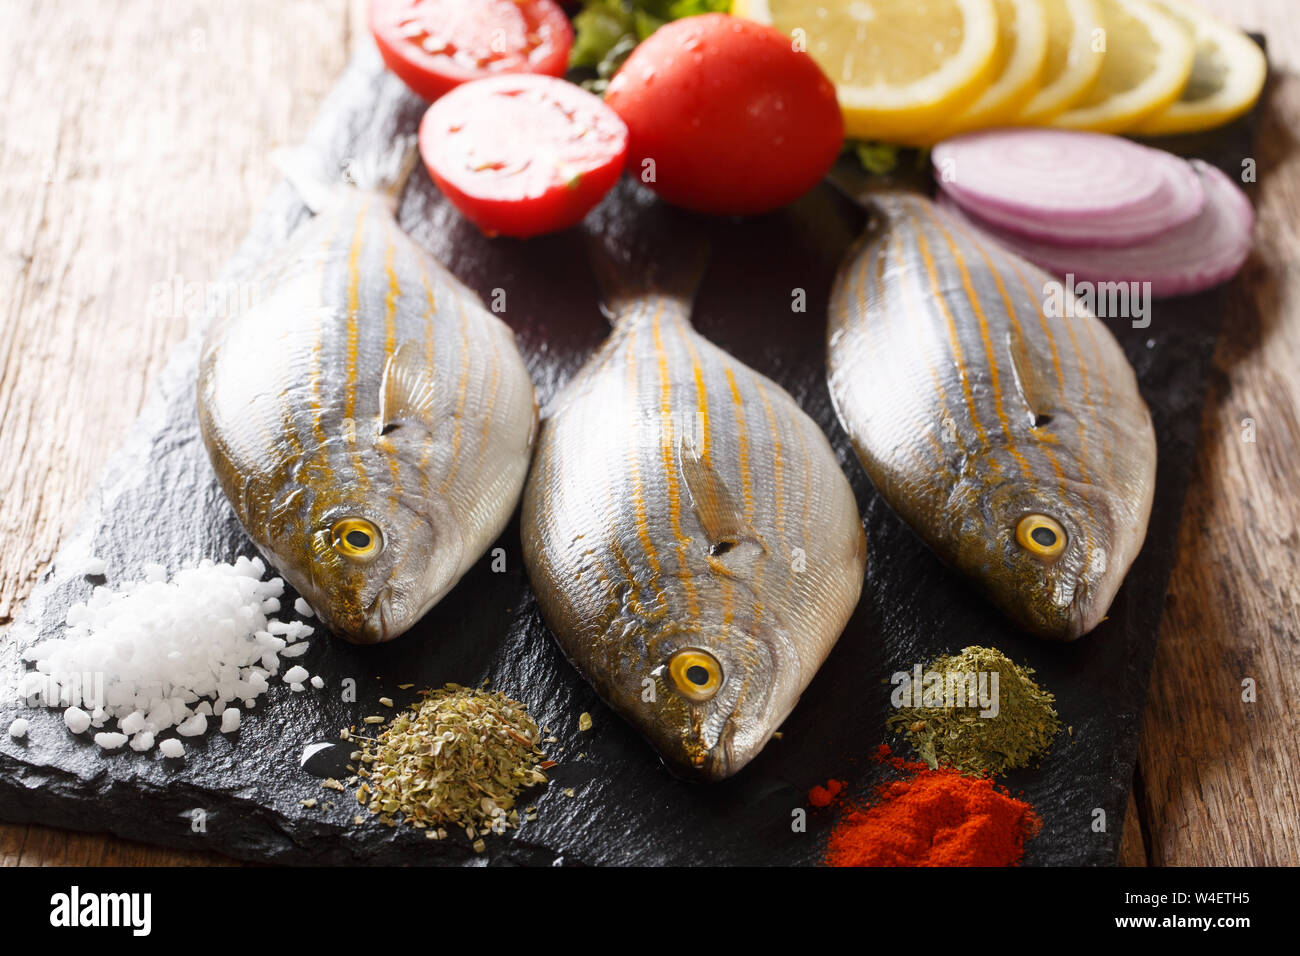 Frische rohe Rohe sarpa salpa Fisch mit Zitrone, Gemüse und Gewürze closeup auf einer Schiefertafel Board auf einen Tisch. Horizontale Stockfoto